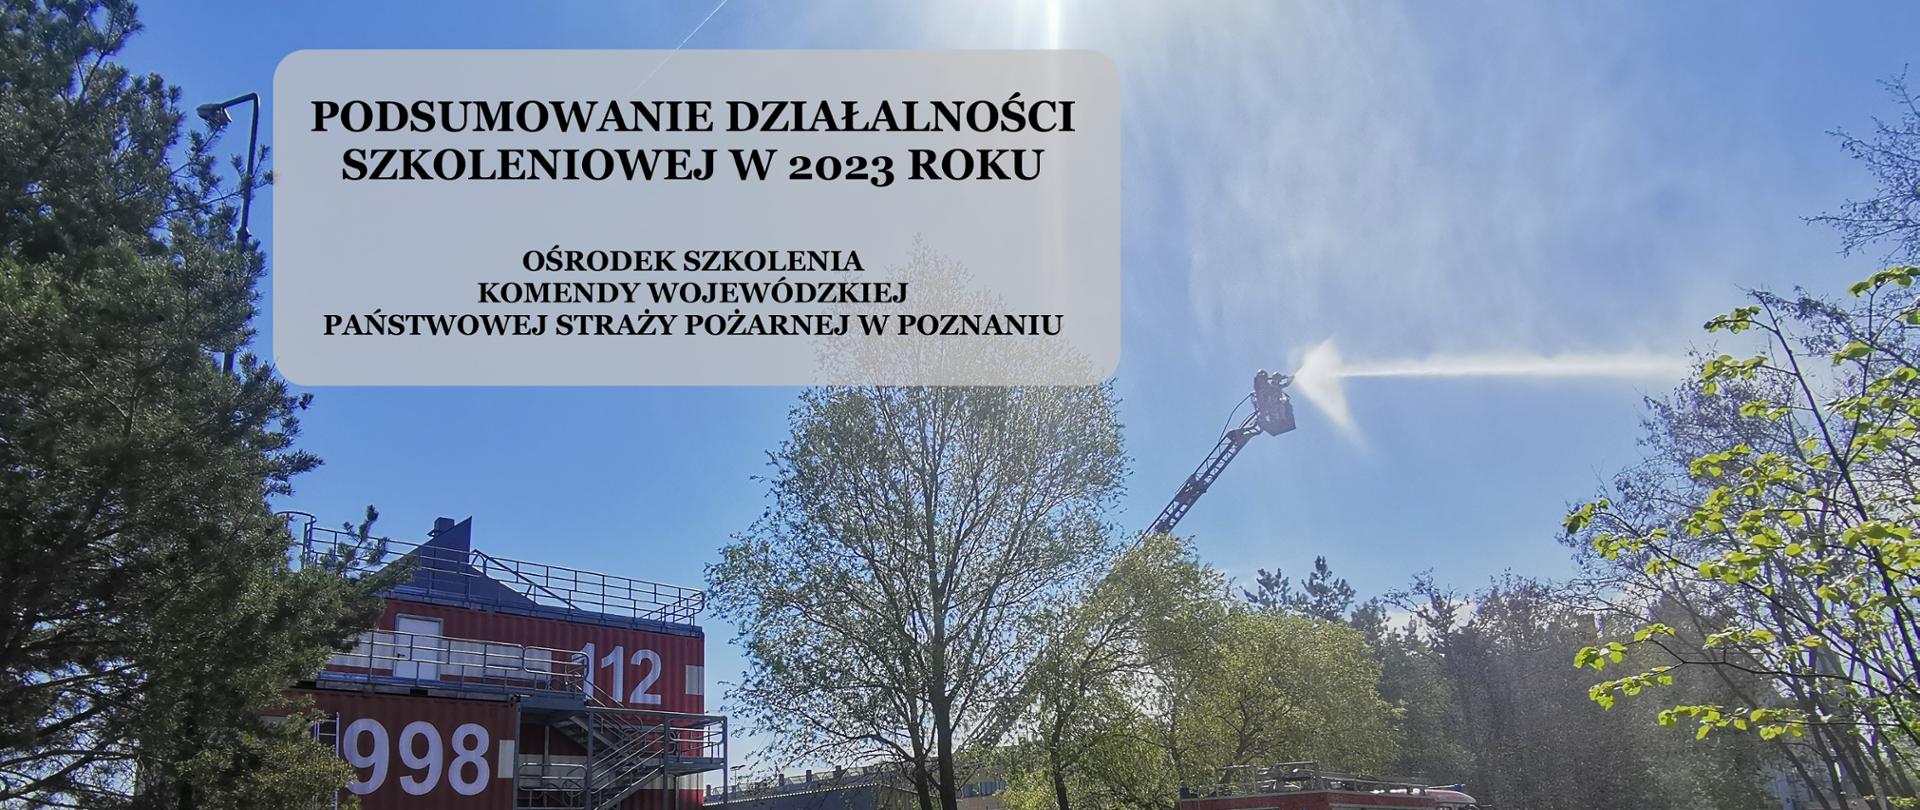 Podsumowanie działalności szkoleniowej Ośrodka Szkolenia KW PSP w Poznaniu w 2023 r.